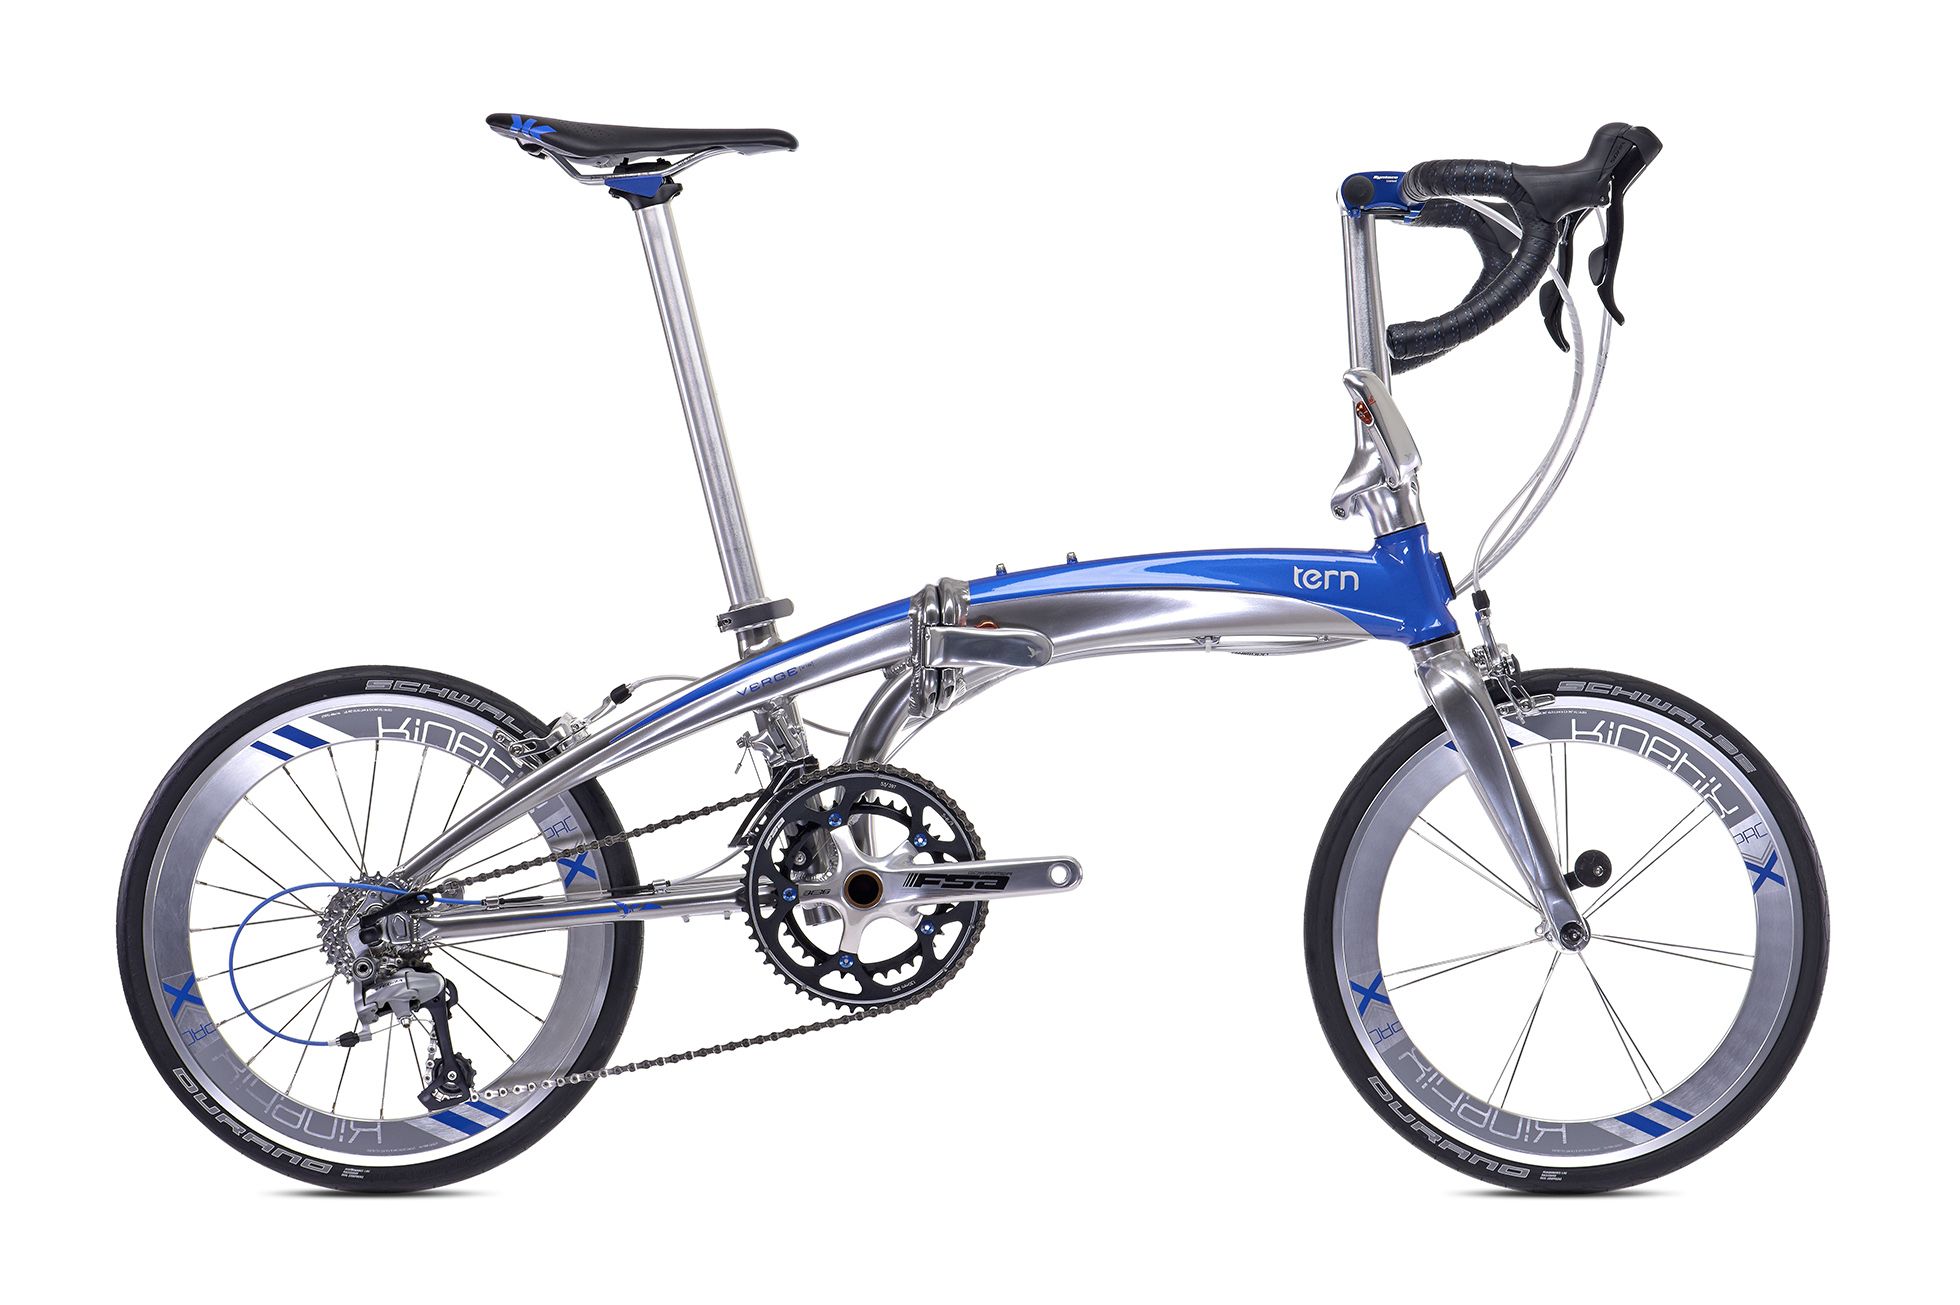  Отзывы о Складном велосипеде Tern Verge X18 2016